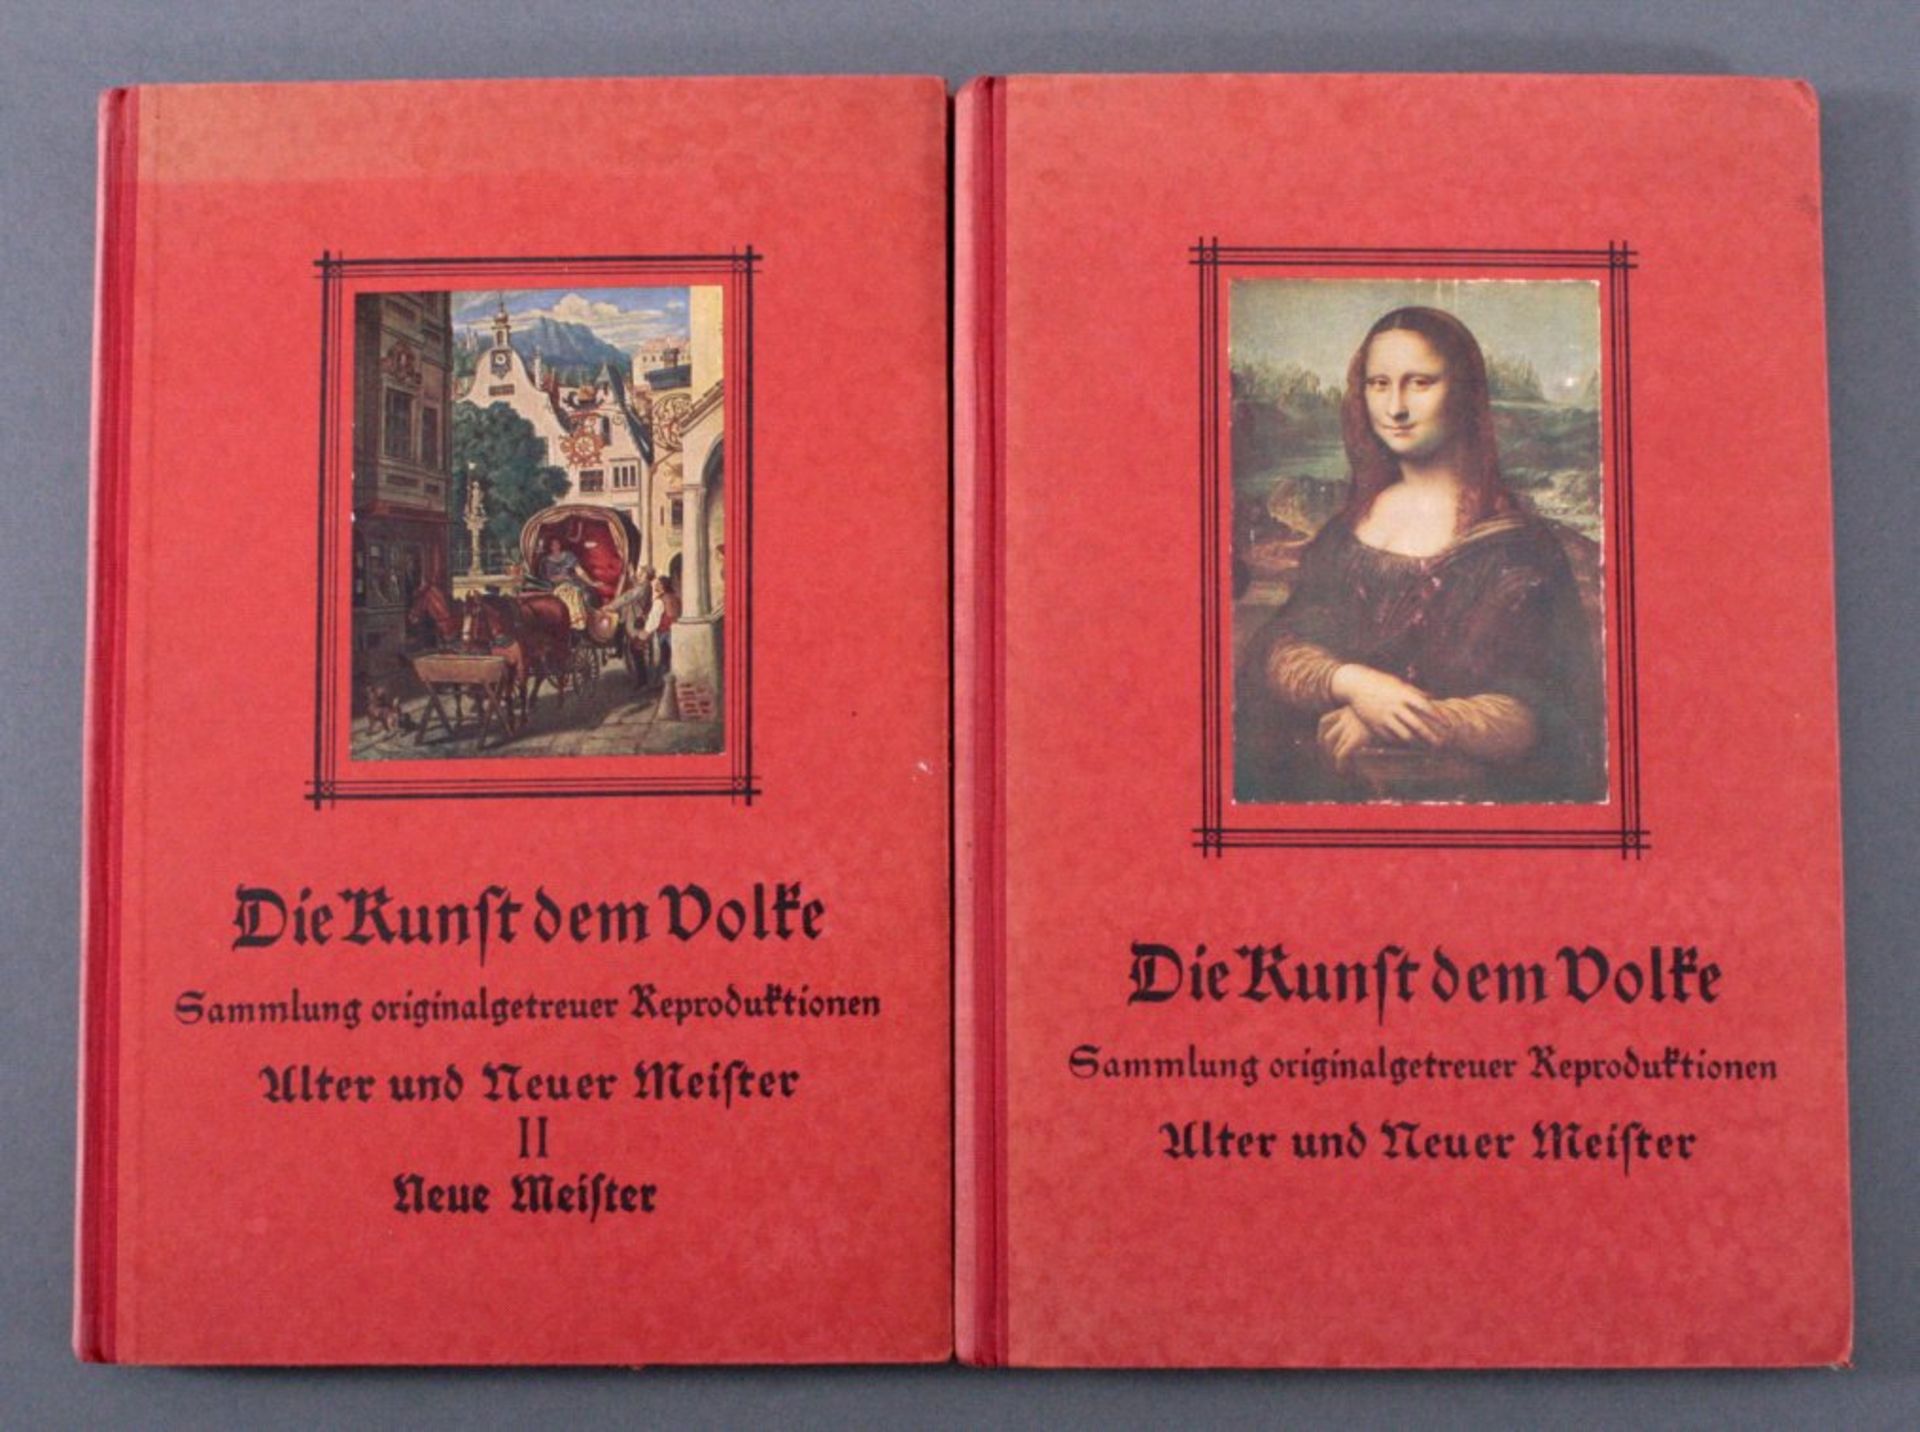 Sammelalbum "Die Kunst dem Volke"2 Bände, einige Bilder doppelt, guter Zustand